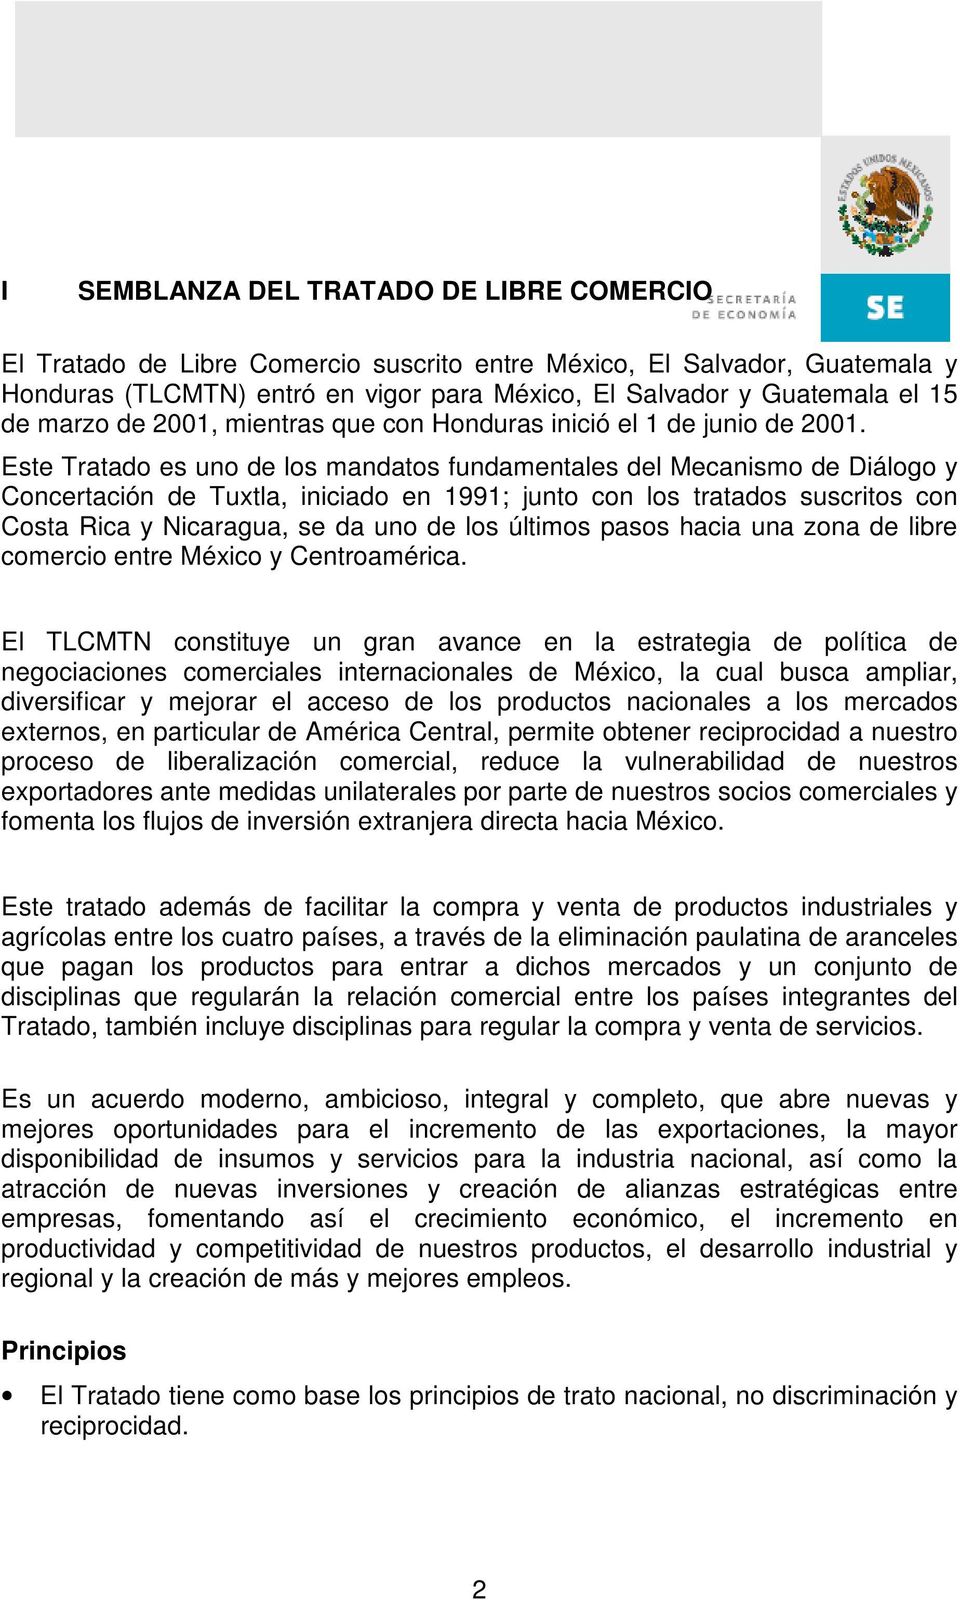 Este Tratado es uno de los mandatos fundamentales del Mecanismo de Diálogo y Concertación de Tuxtla, iniciado en 1991; junto con los tratados suscritos con Costa Rica y Nicaragua, se da uno de los